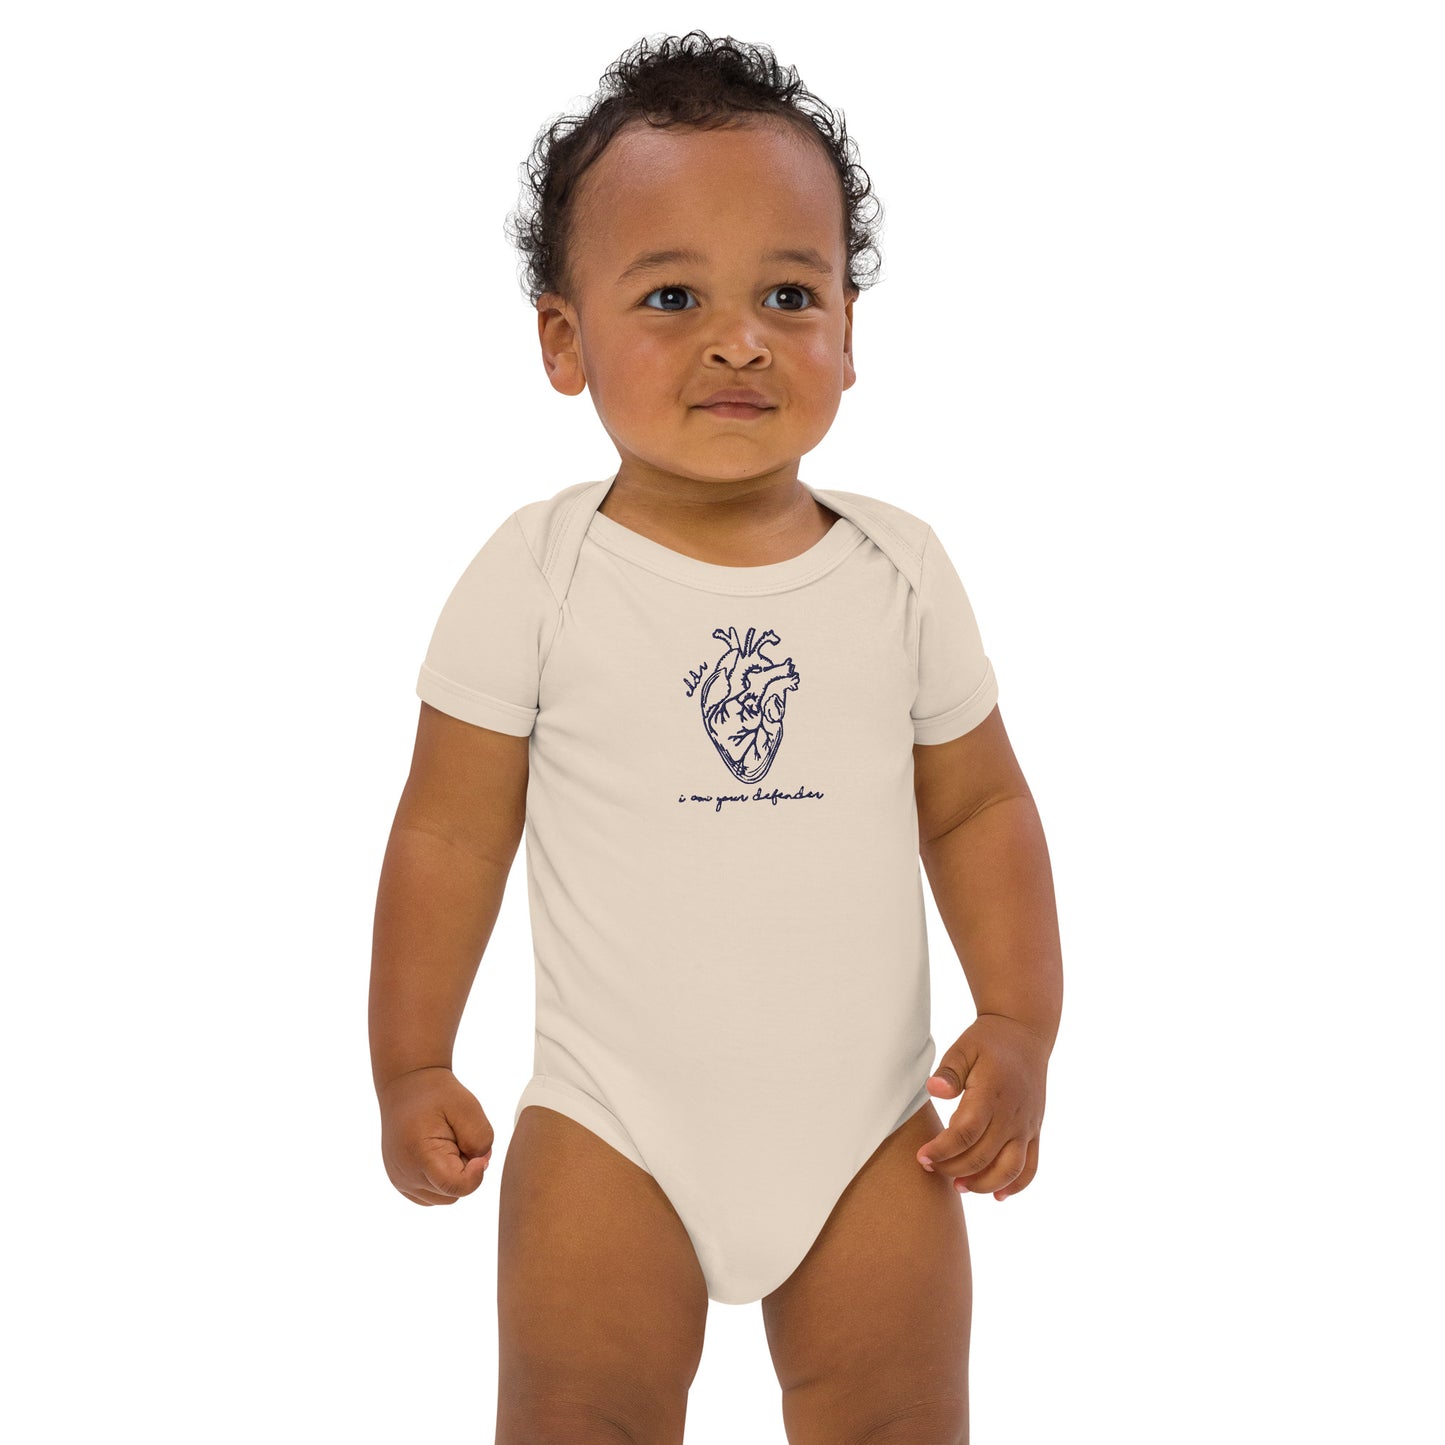 ELDR 'Defender' Organic Cotton Baby Bodysuit- Embroidered Heart Anatomy